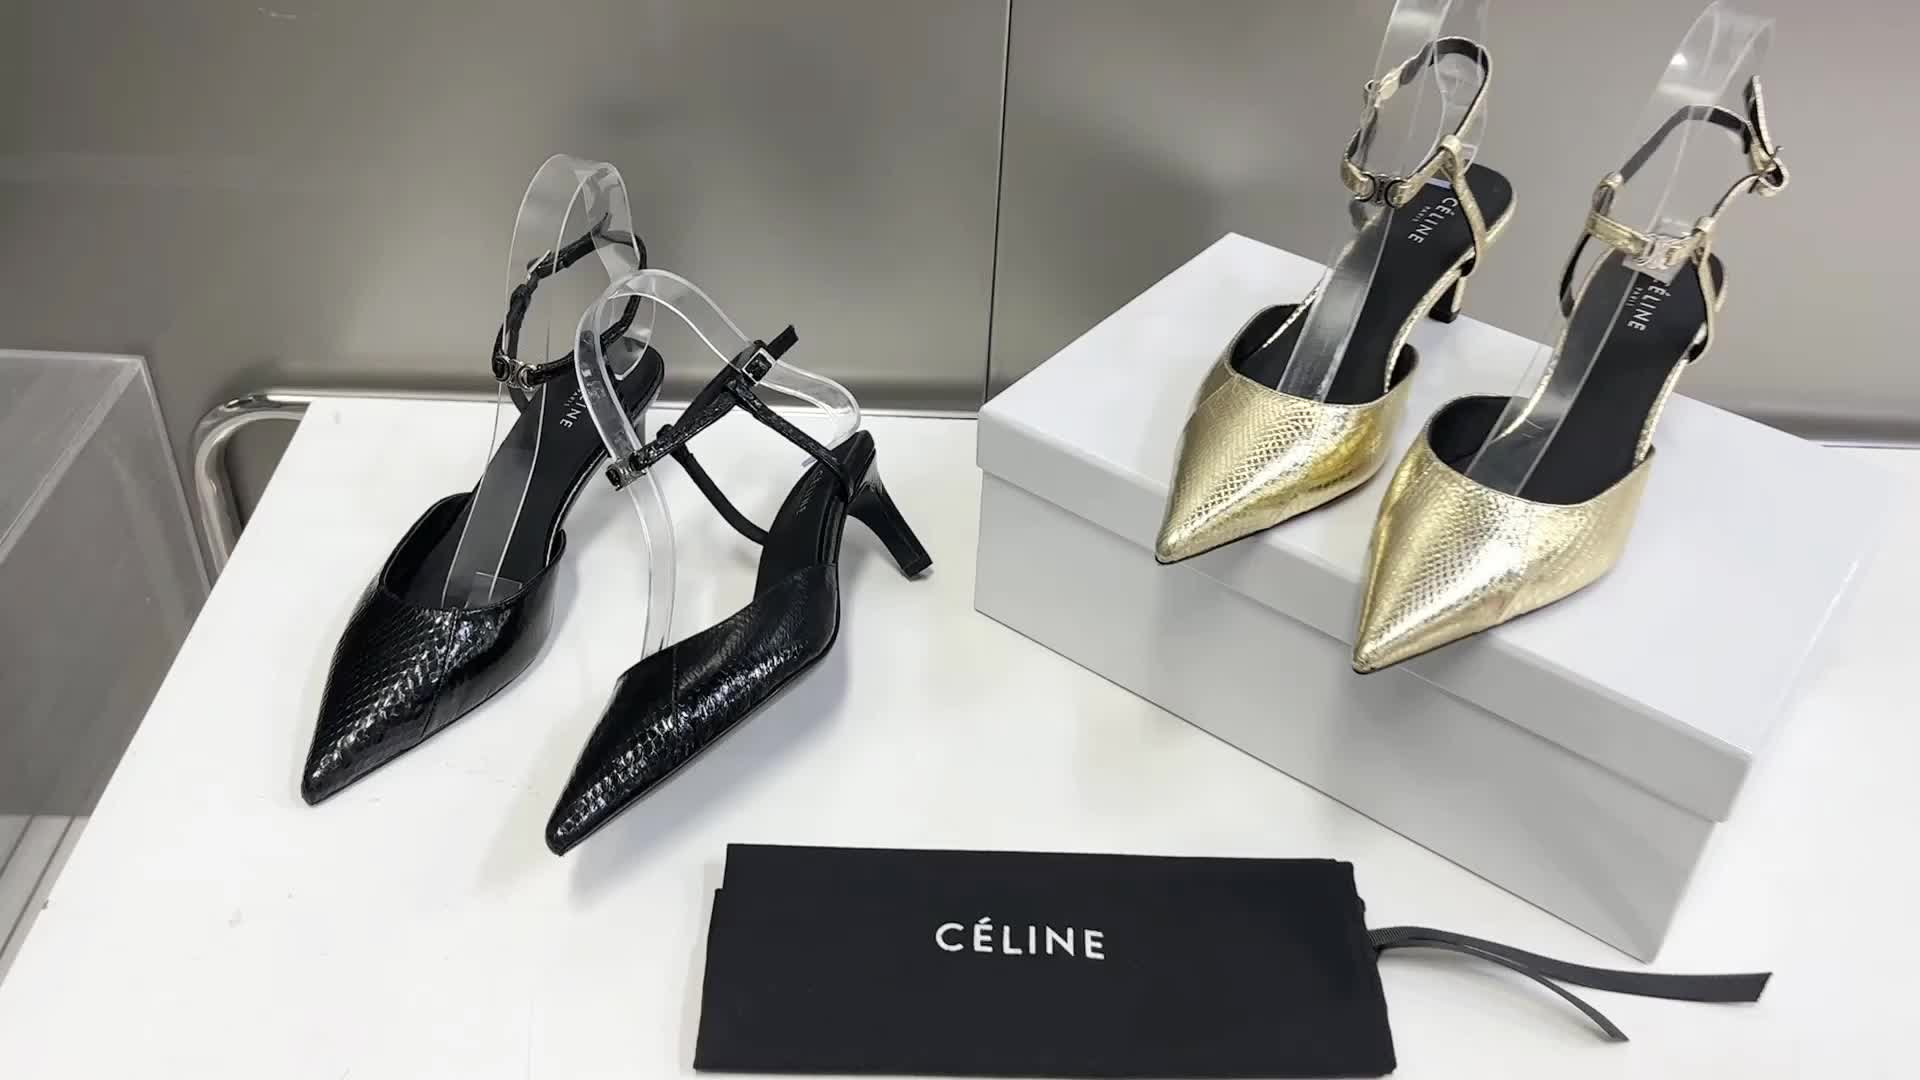 Celine-Women Shoes Code: RS9513 $: 119USD